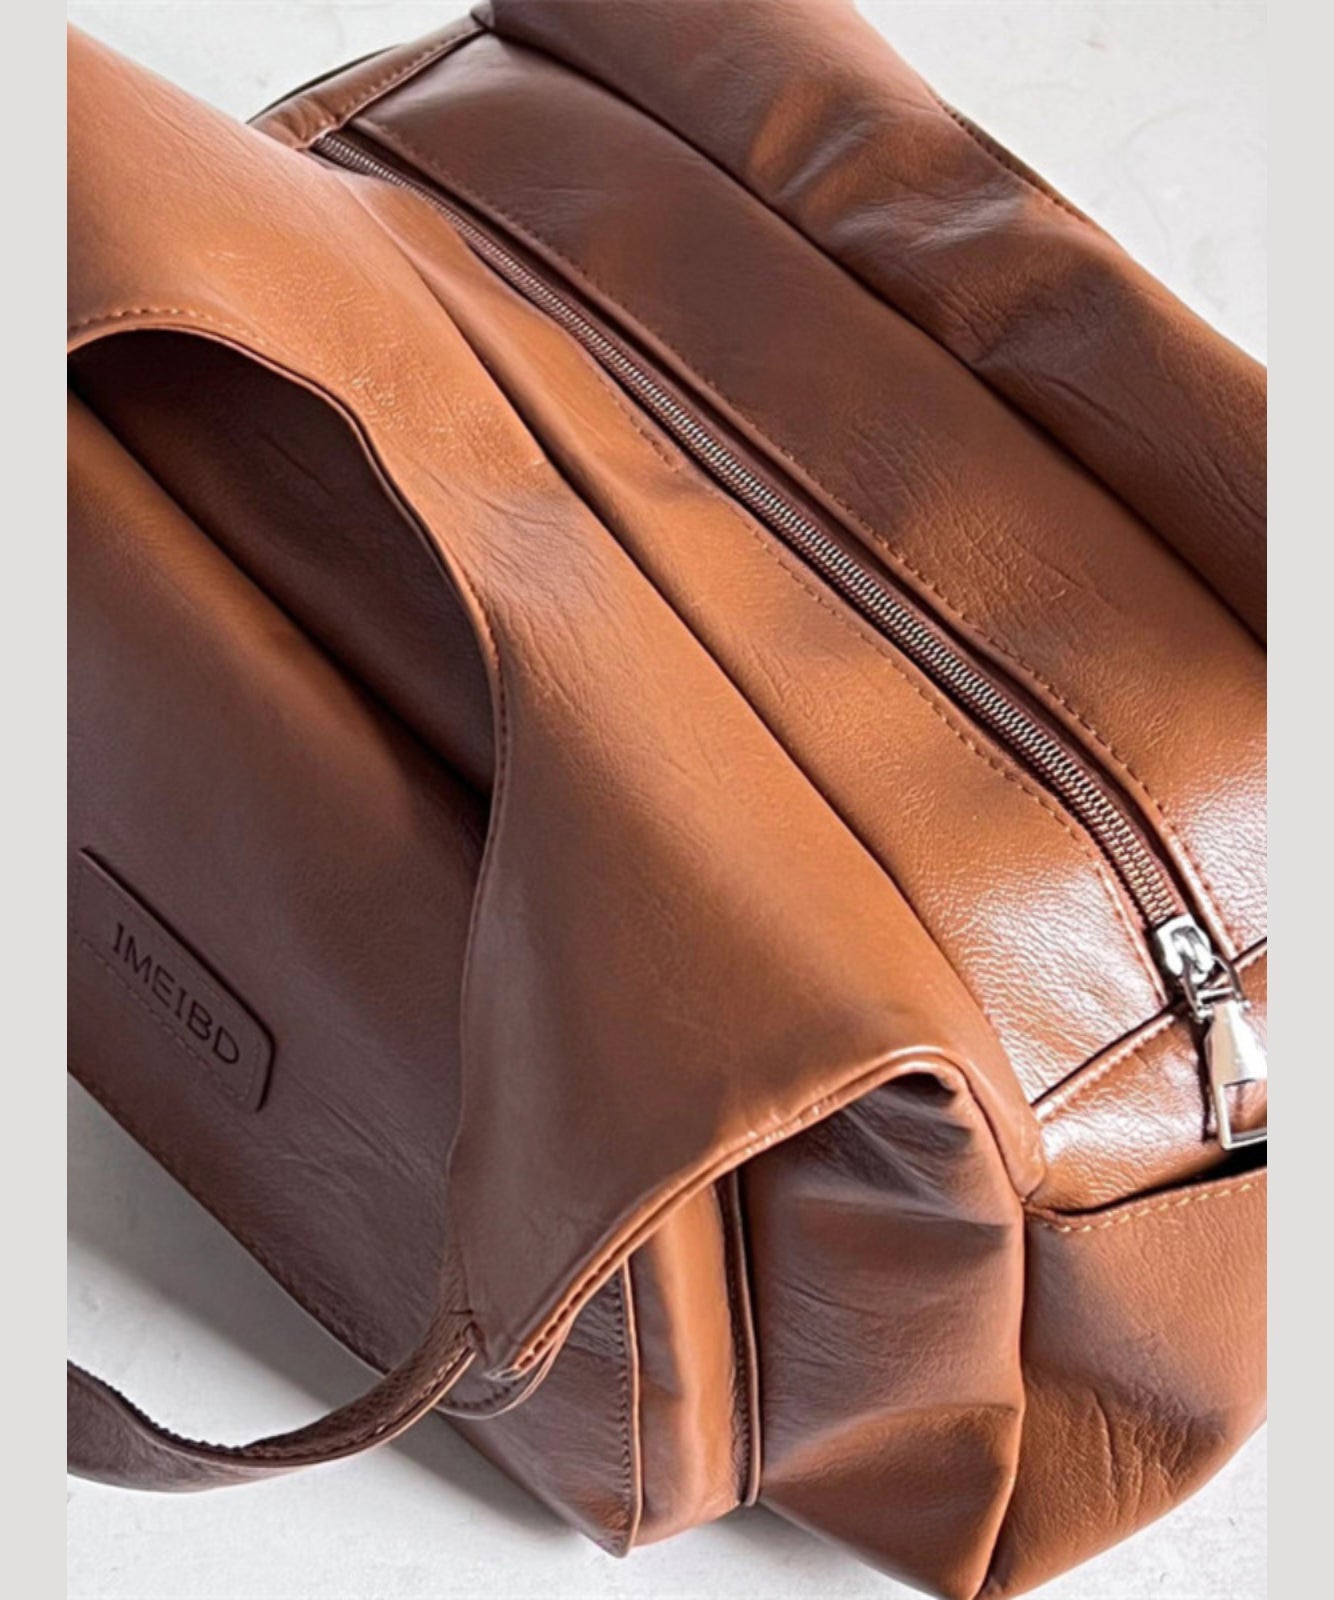 Retro Versatile Brown Large Capacity Faux Leather Satchel Handbag SX1007